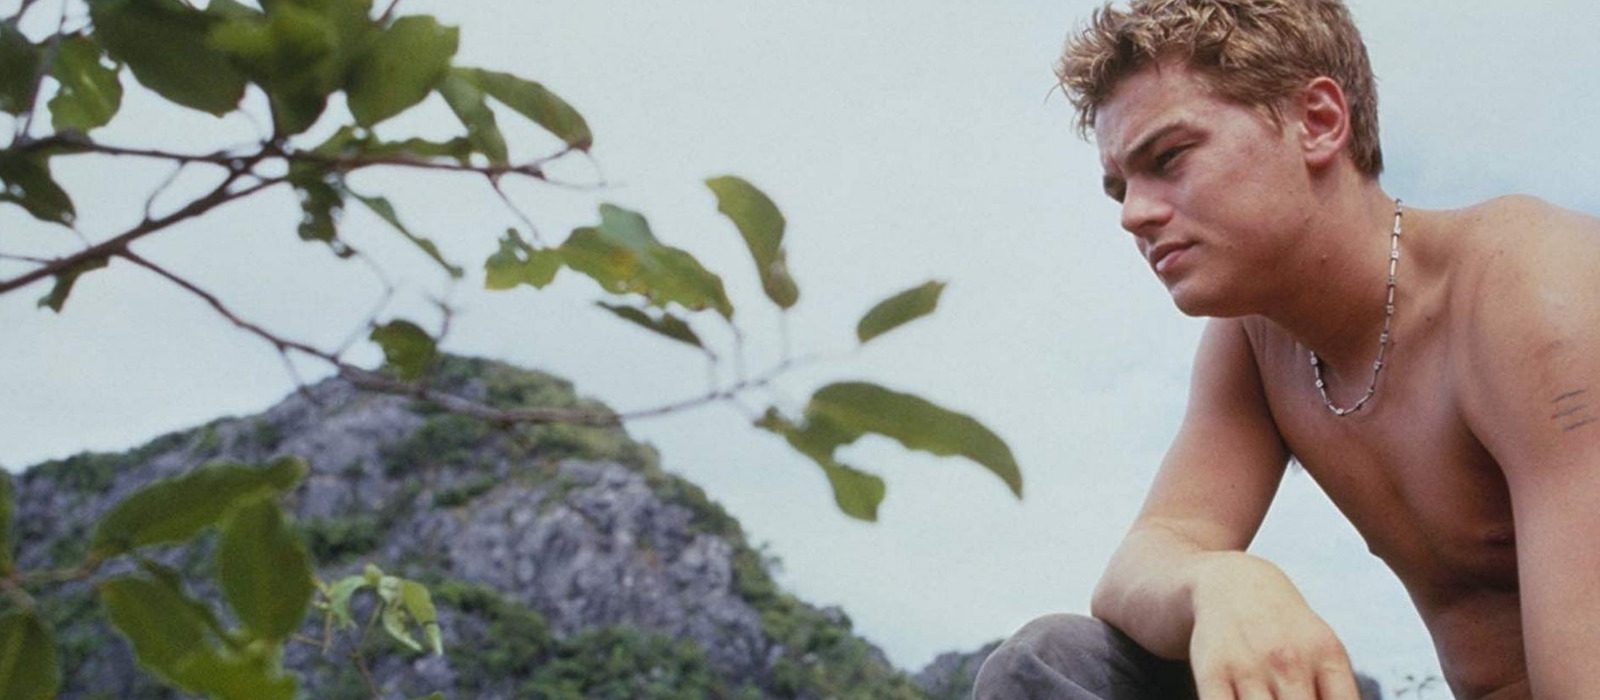 Leonardo DiCaprio as Richard